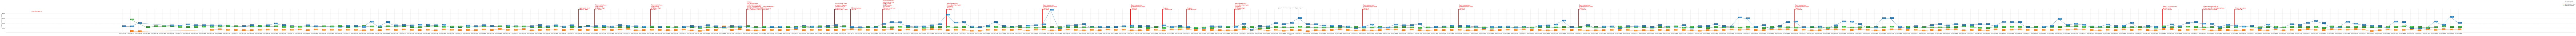 Гистограмма, показывающая среднюю стоимость квадратного метра недвижимости в Крыму по дням c 2022-01-01 по 2023-05-31